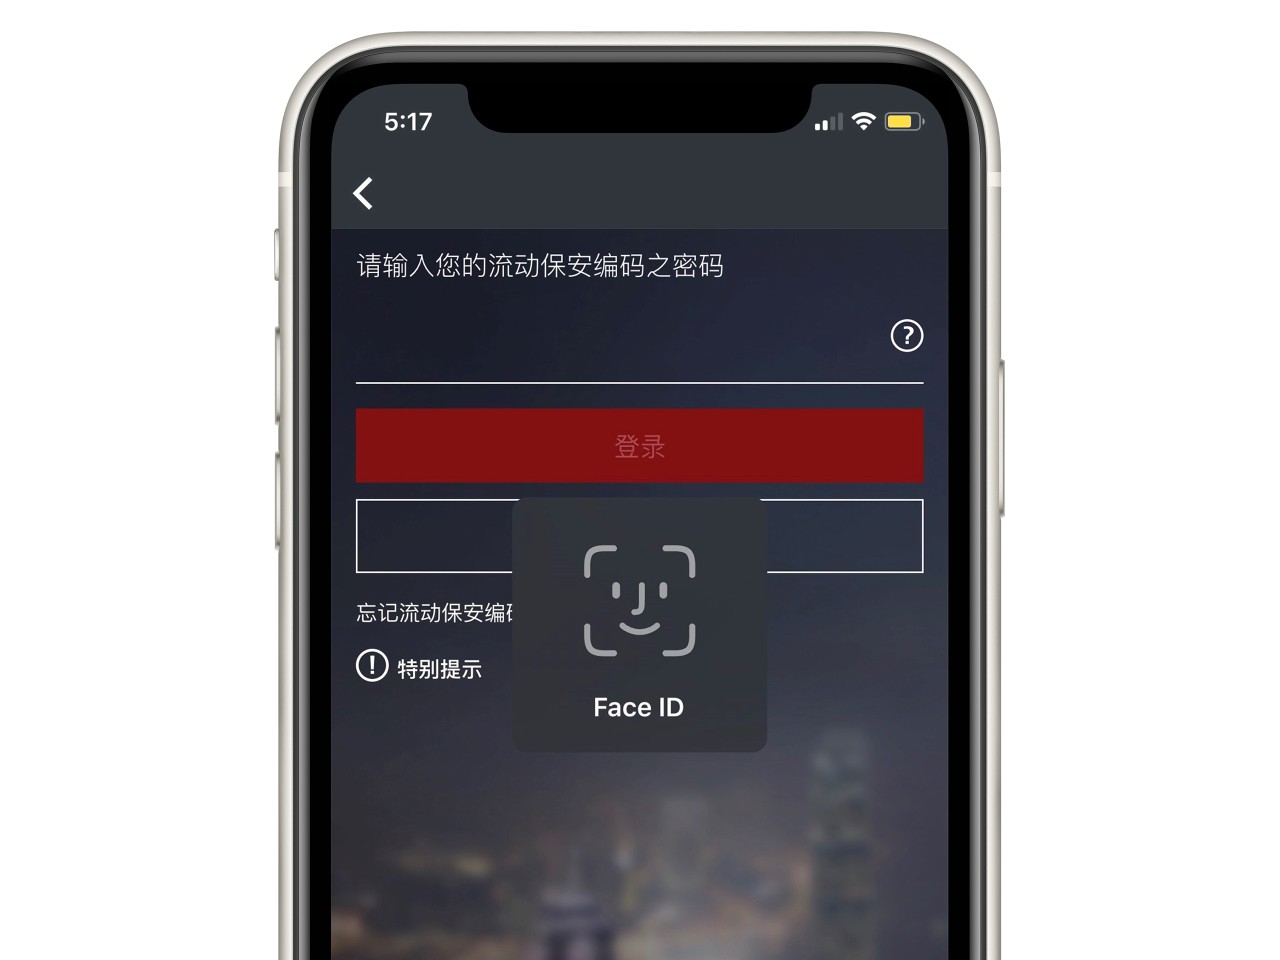 香港汇丰流动理财应用程序画面截图；显示Face ID登入功能